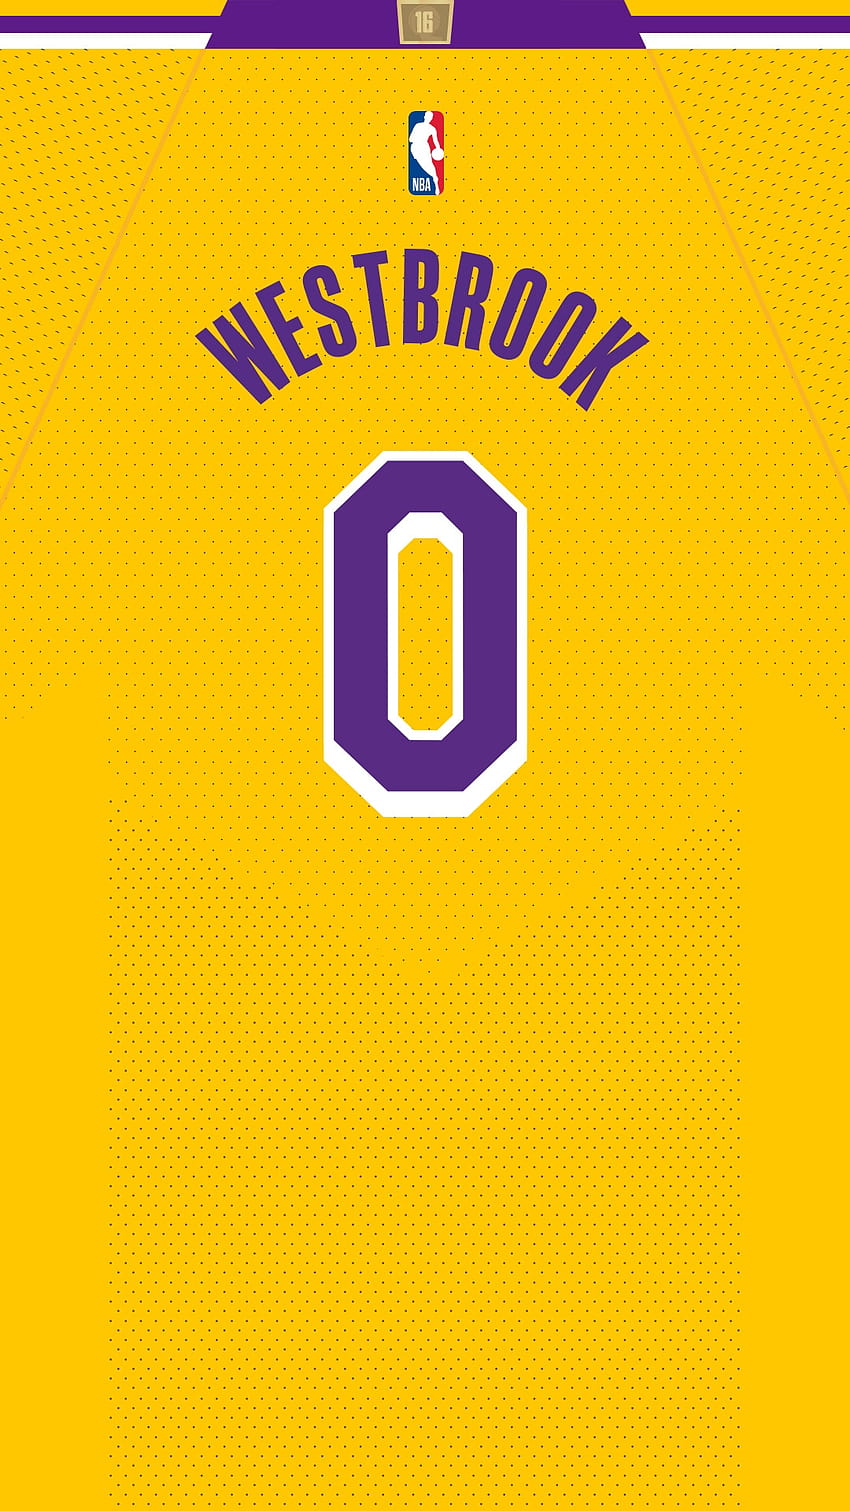 Lakers dan Infografis, russell westbrook lakers wallpaper ponsel HD